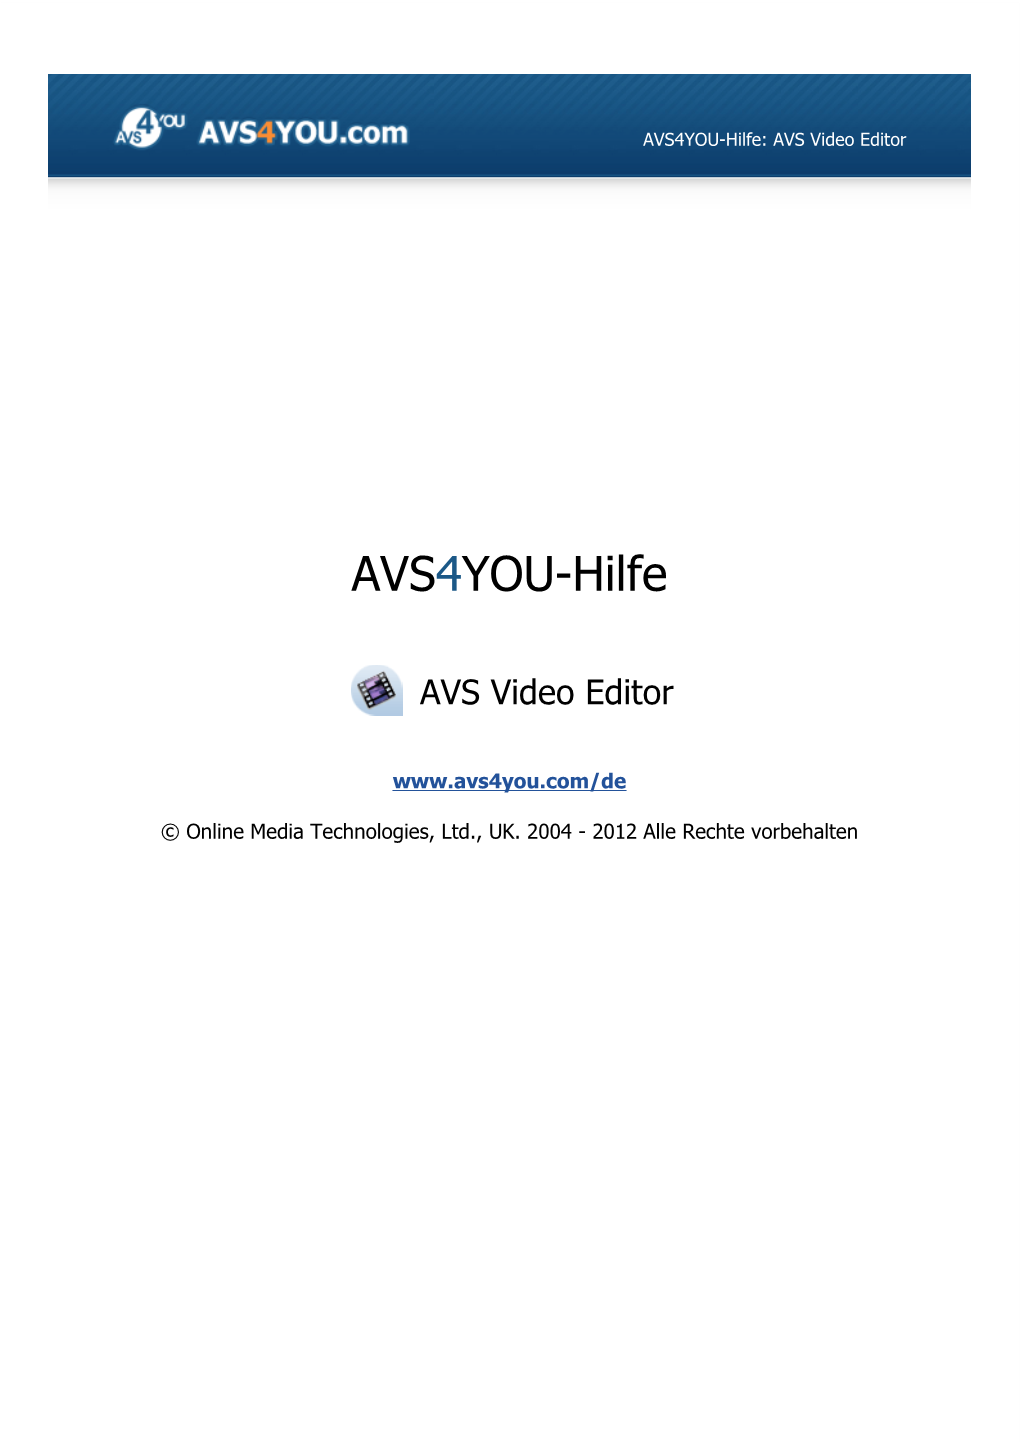 AVS4YOU-Hilfe: AVS Video Editor